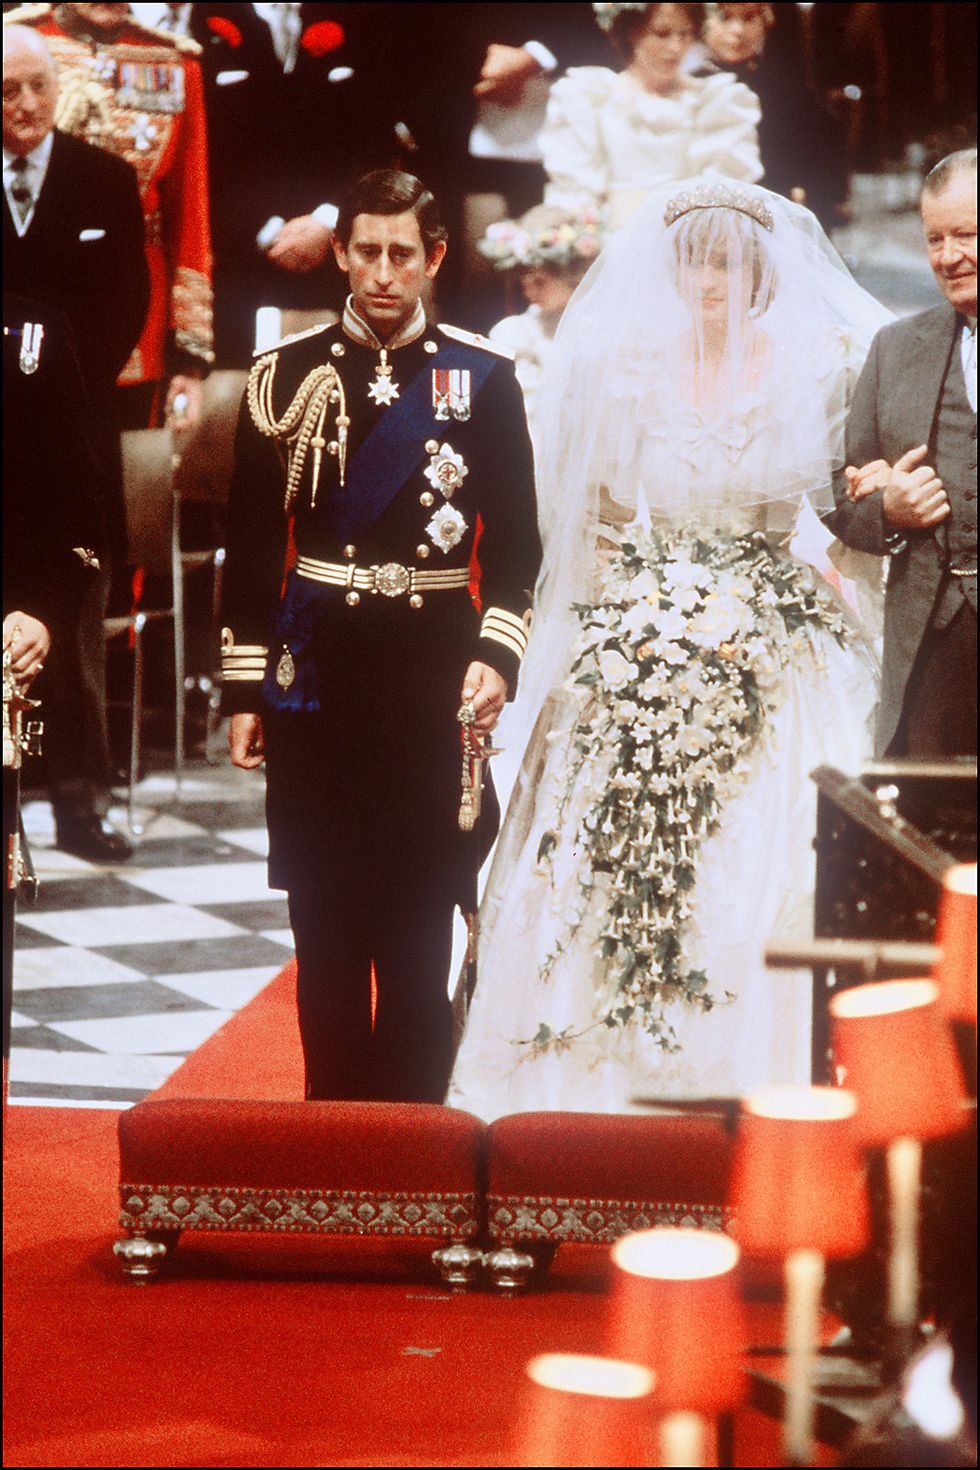 <p>
Ha scelto di non seguire la tradizione reale del voto di nozze in cui la donna promette obbedienza  al marito, pronunciando "obey" all'altare. Trent'anni dopo anche William e Kate hanno seguito l'esempio della principessa Diana.</p>